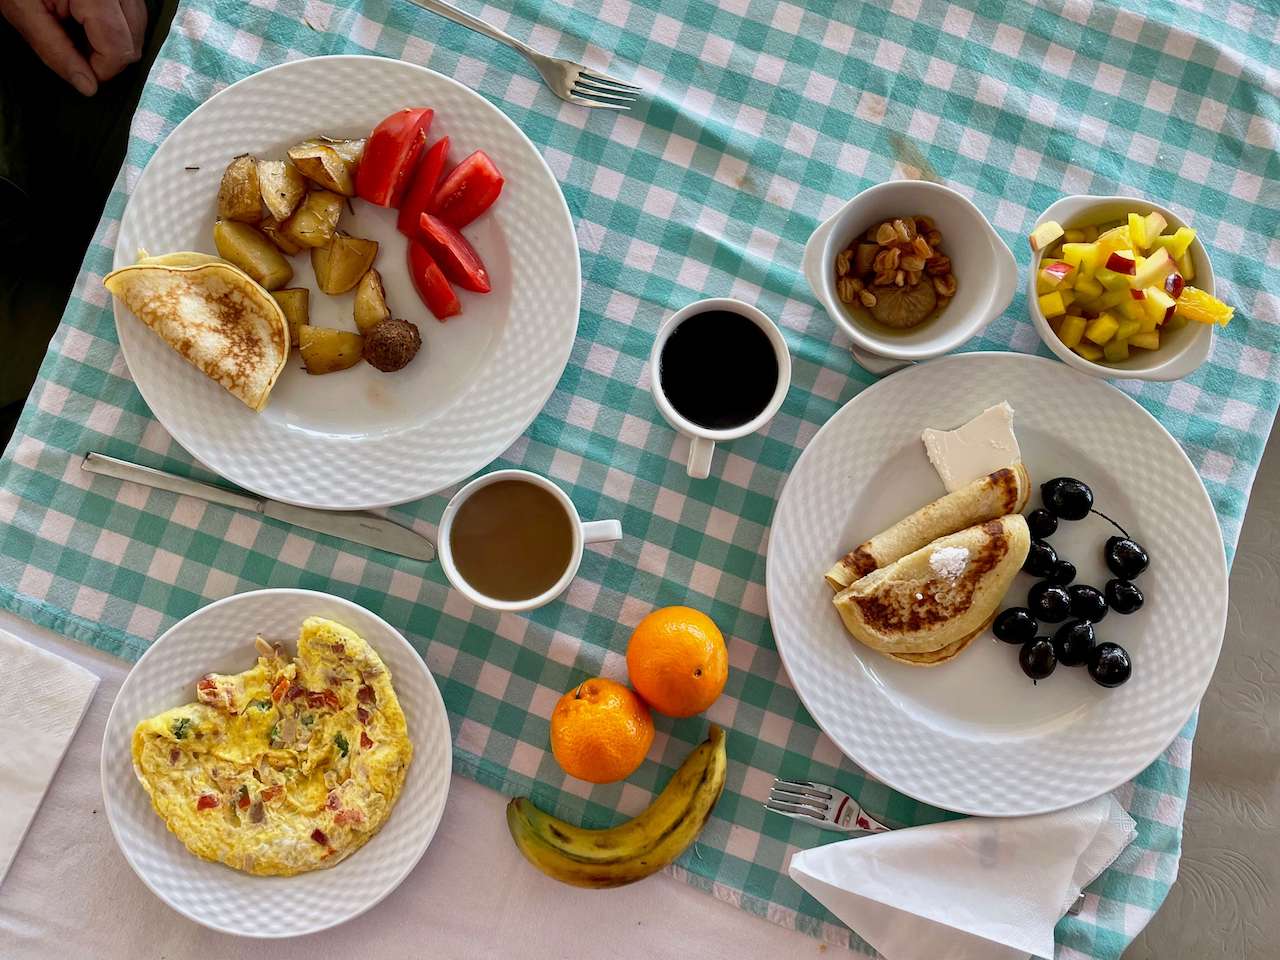 Egypt, Aswan - Hotel breakfast